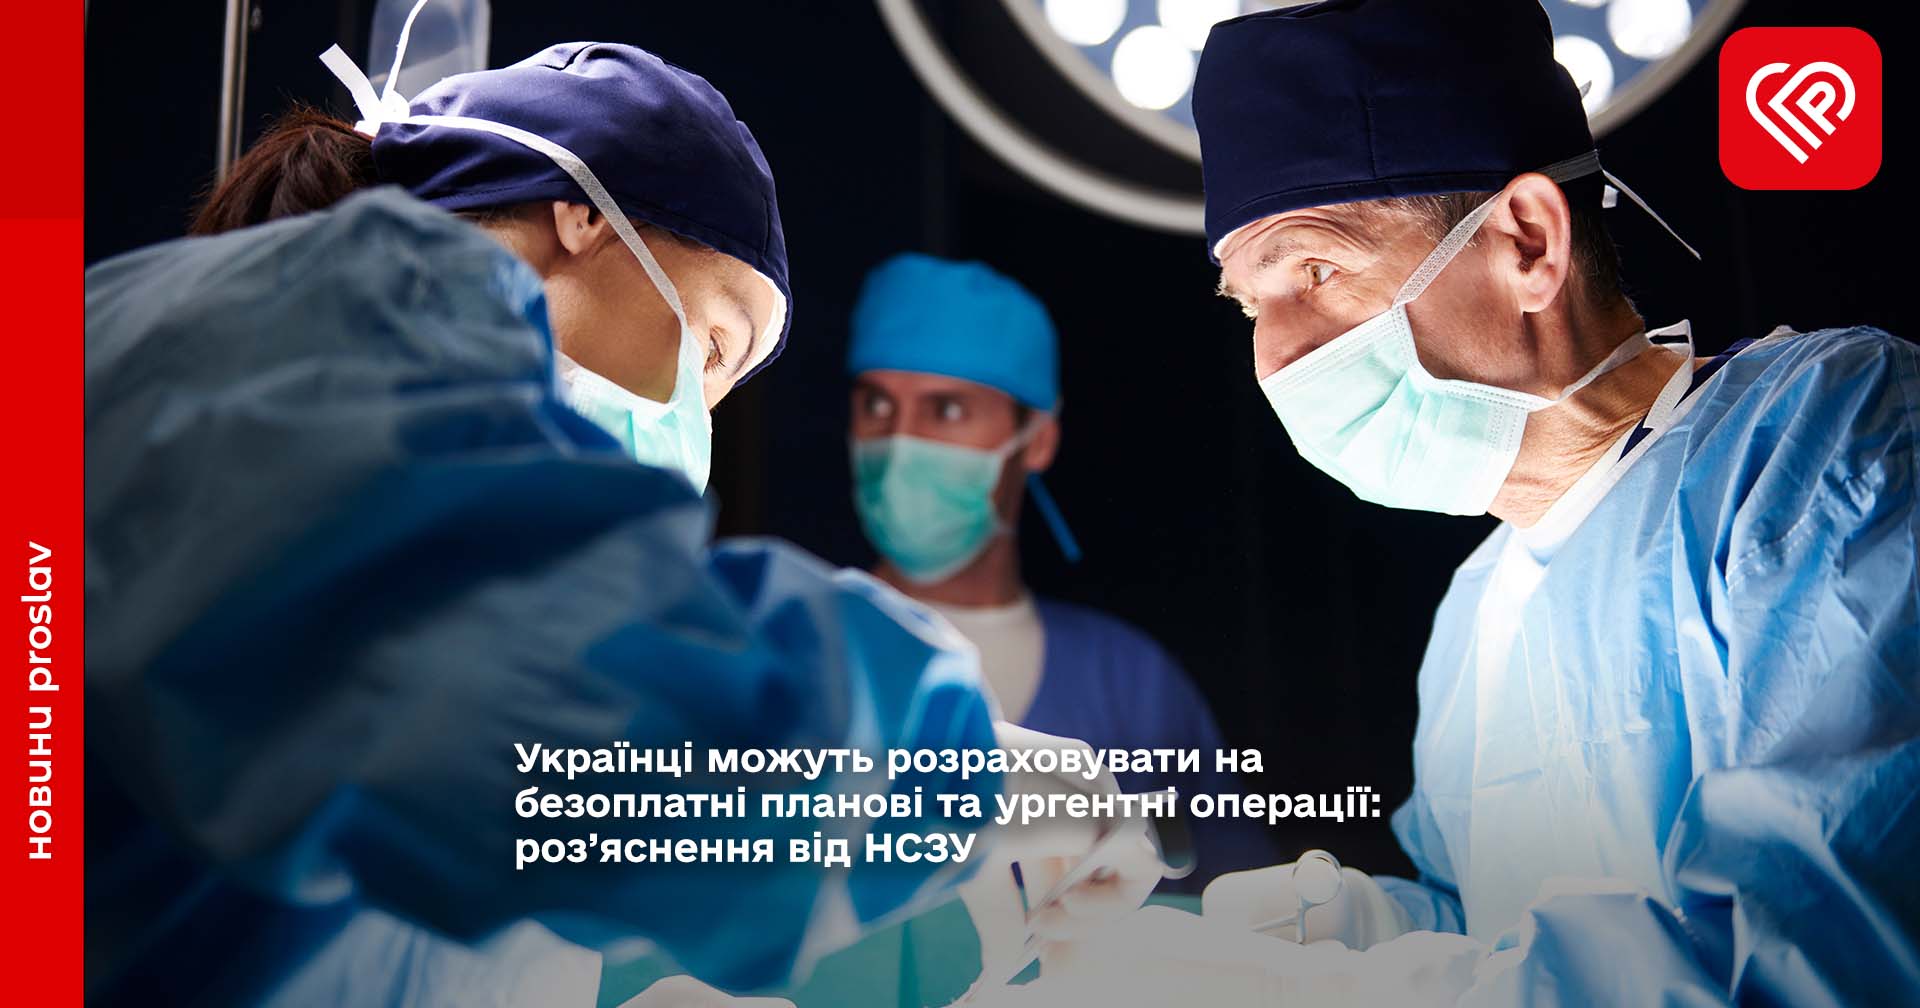 Українці можуть розраховувати на безоплатні планові та ургентні операції: роз’яснення від НСЗУ